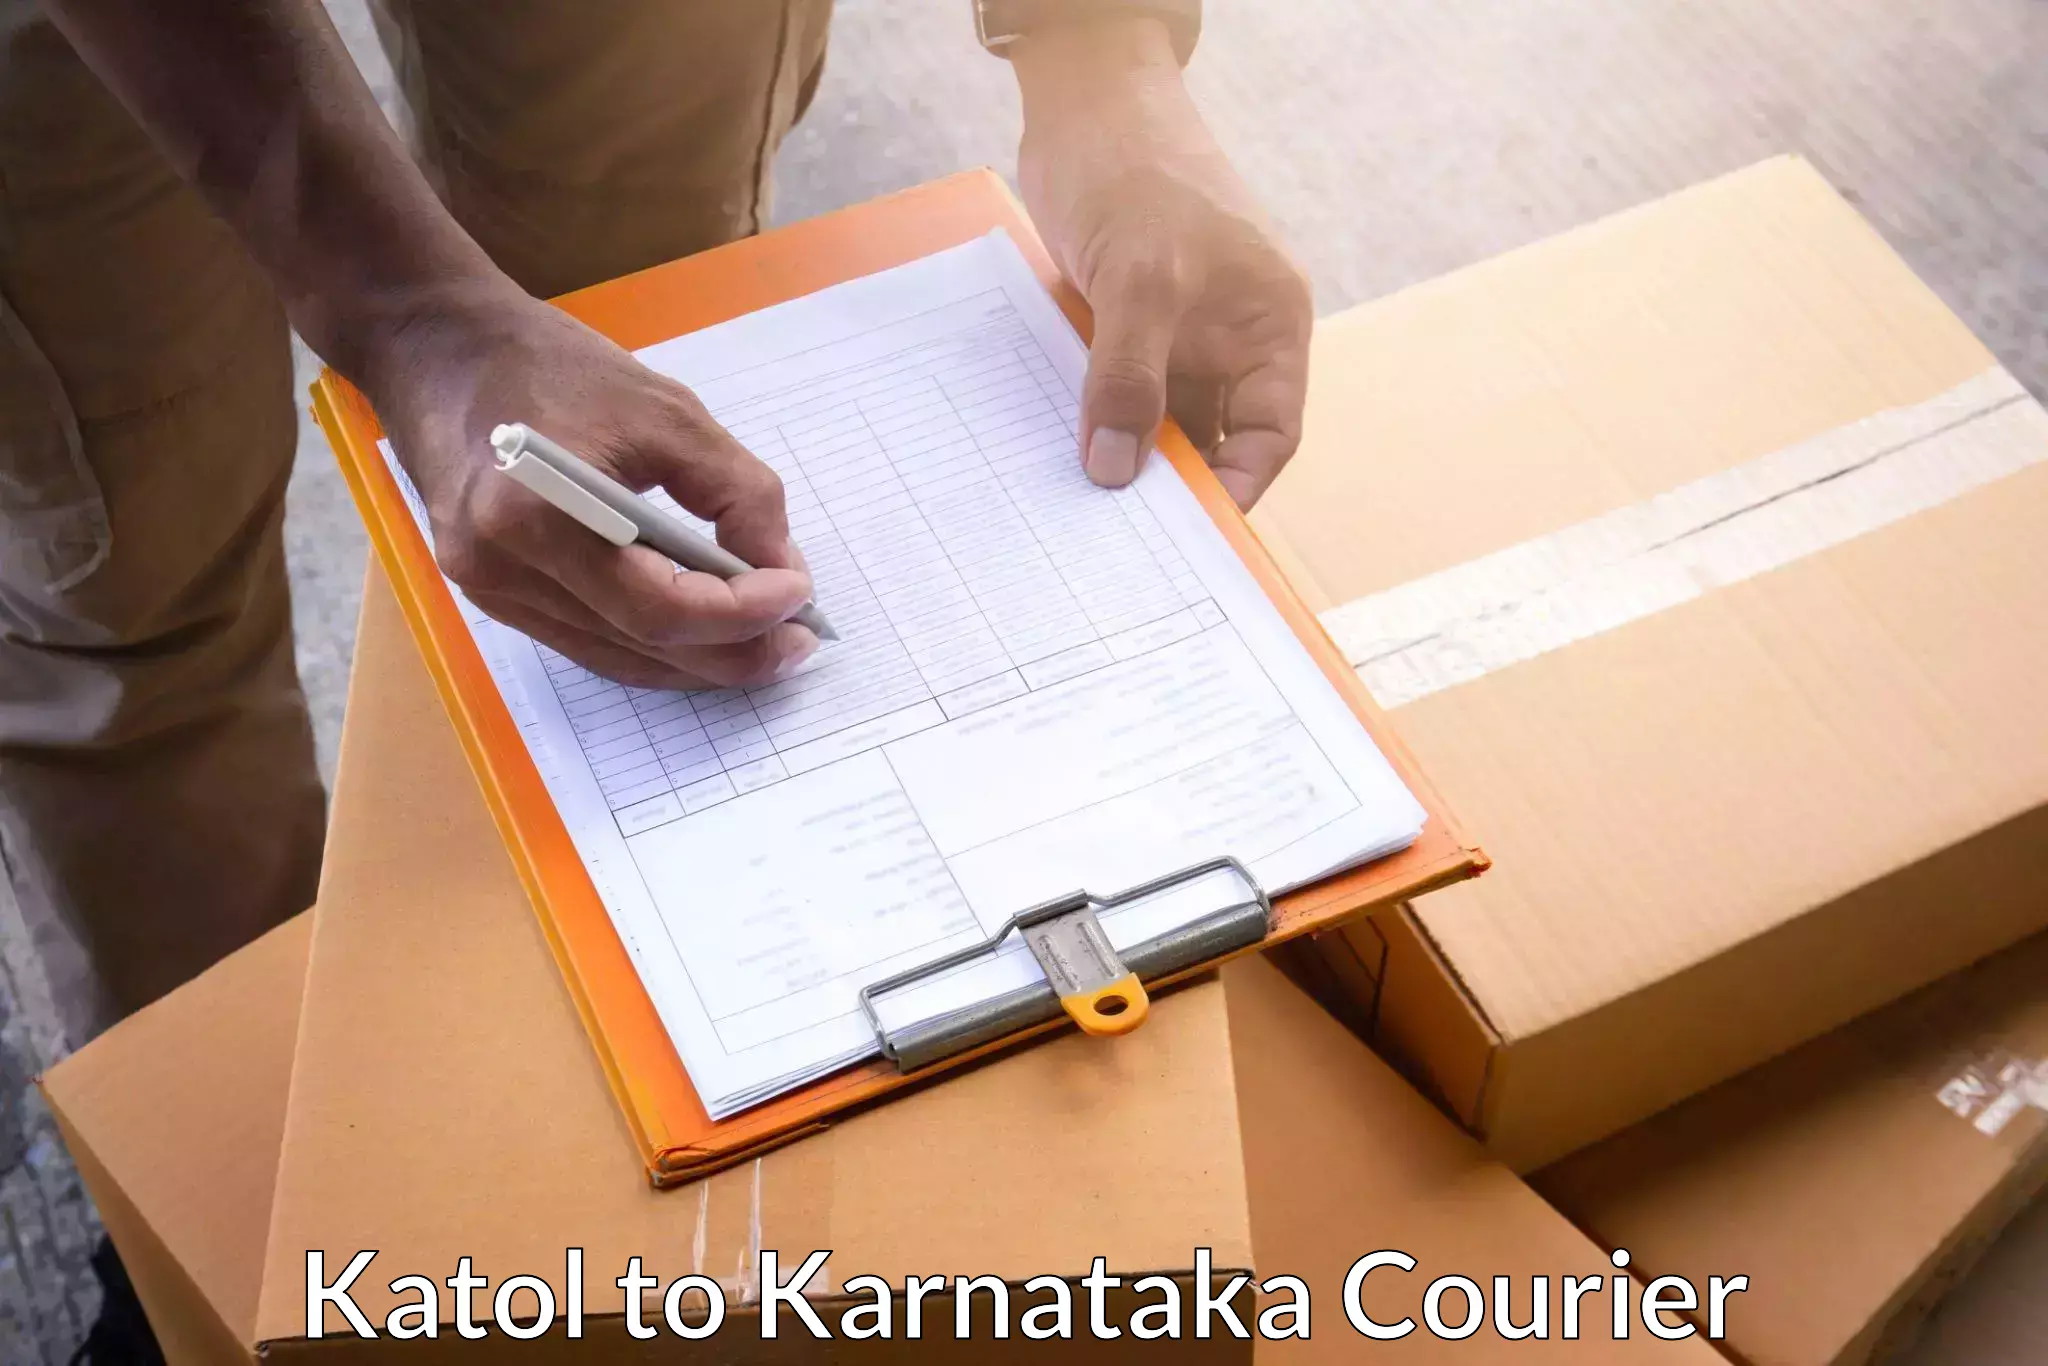 Express package transport Katol to Kanjarakatte